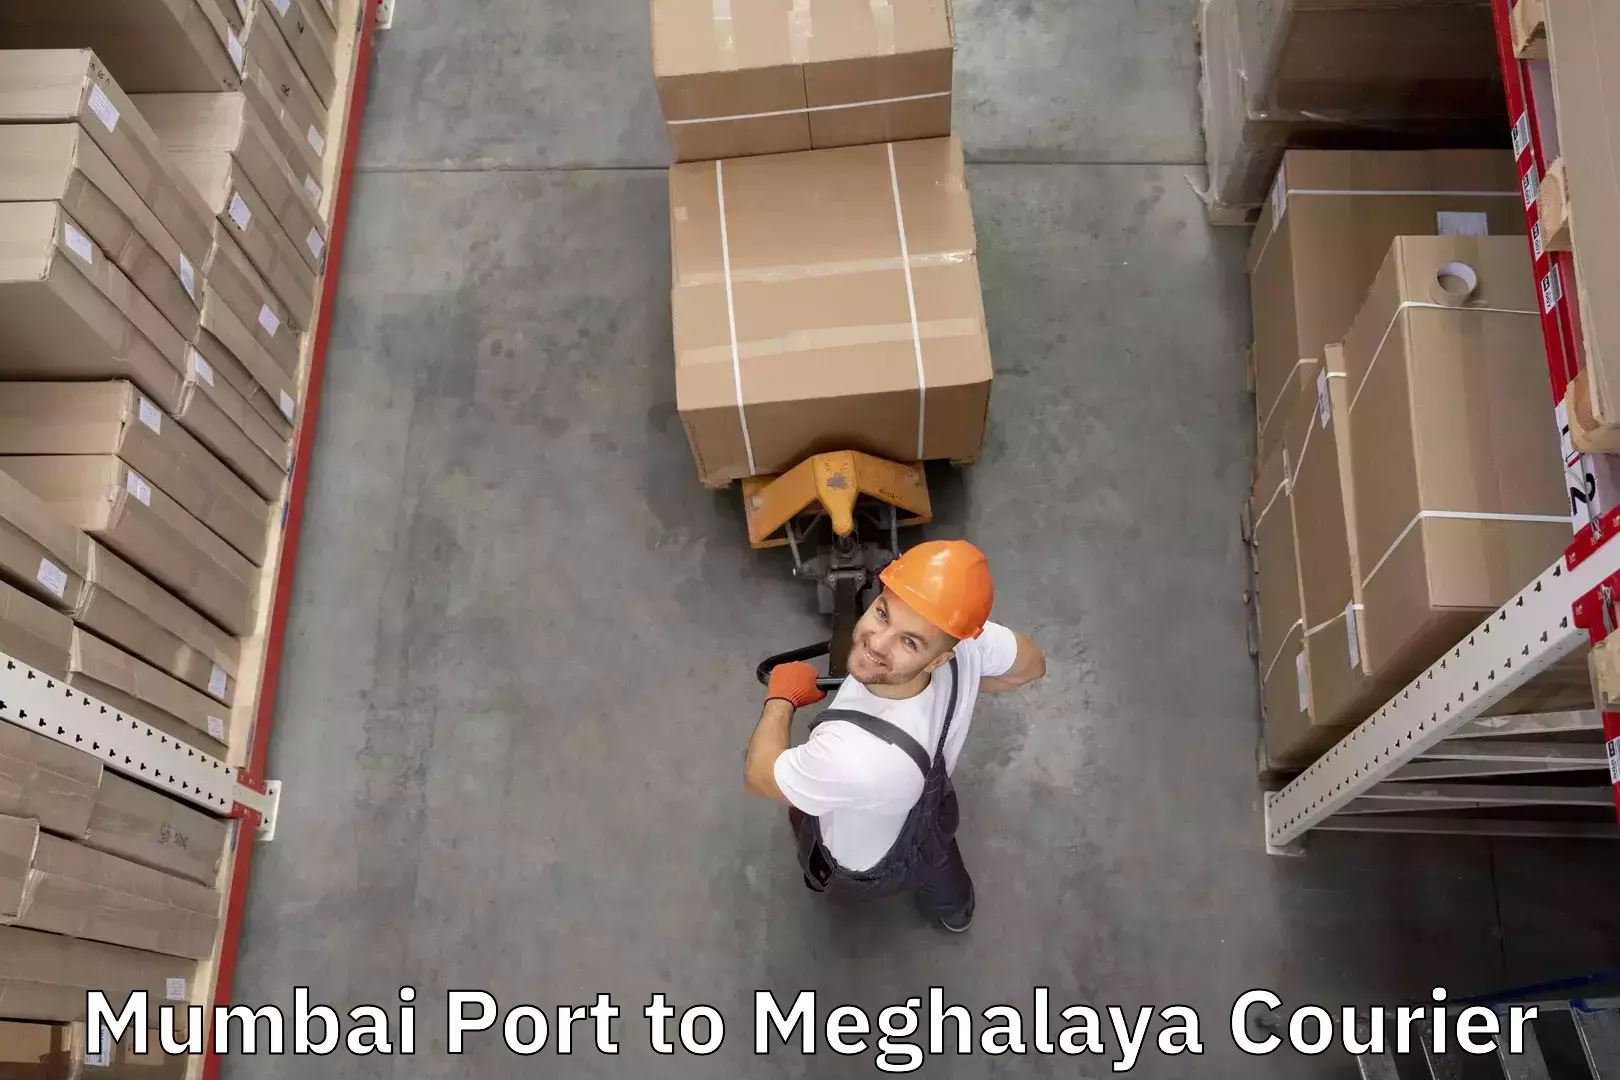 Luggage shipment processing Mumbai Port to Meghalaya